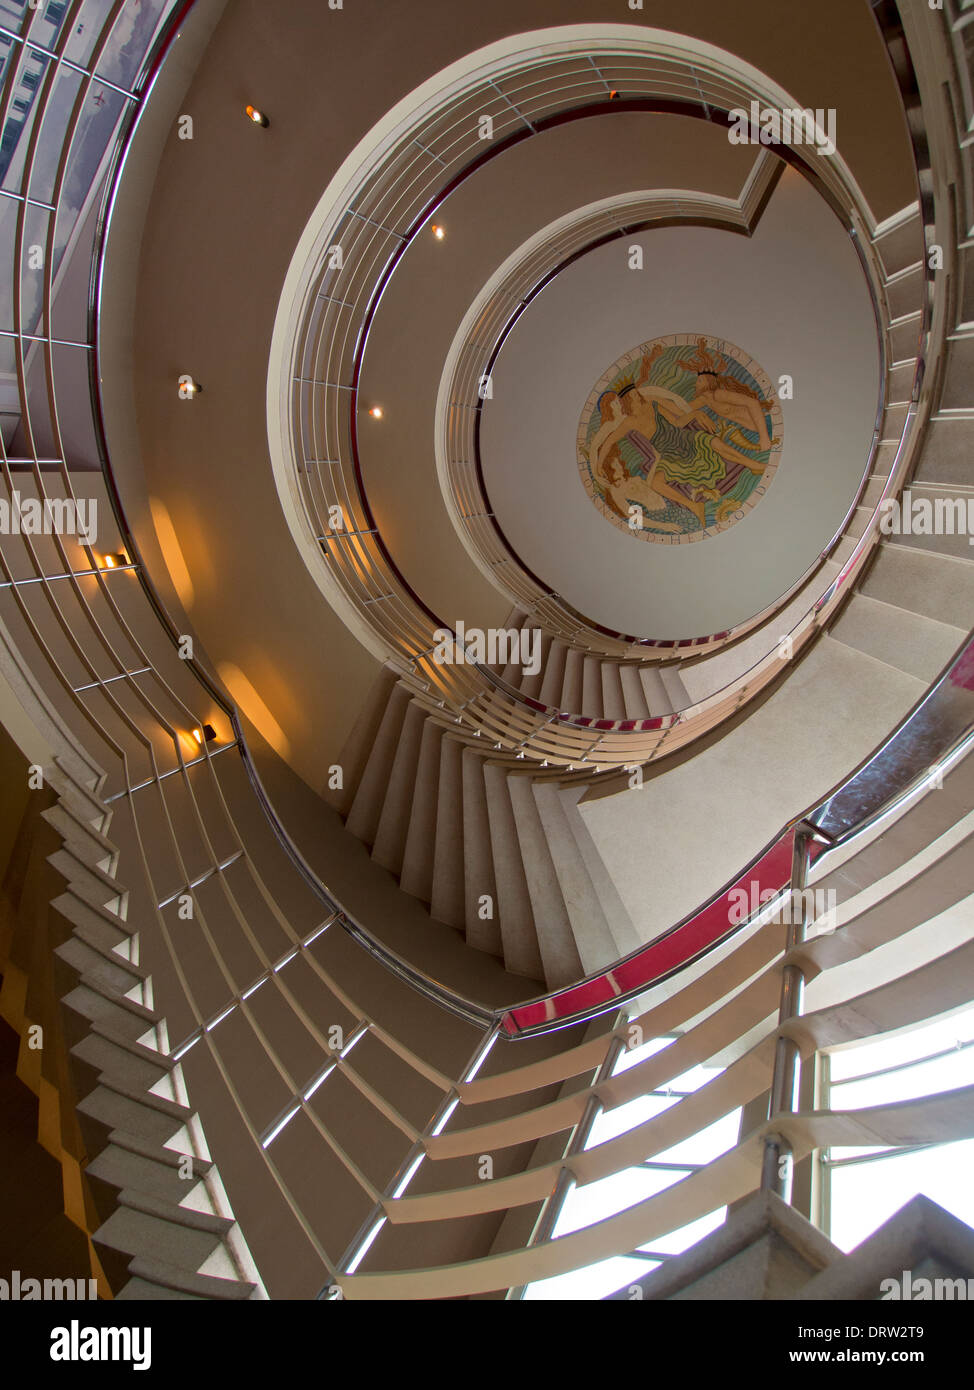 Un grand escalier en spirale dans un style Art Déco mène vers un plafond qui porte l'original d'Eric Gill sculpture bas-relief peint Banque D'Images